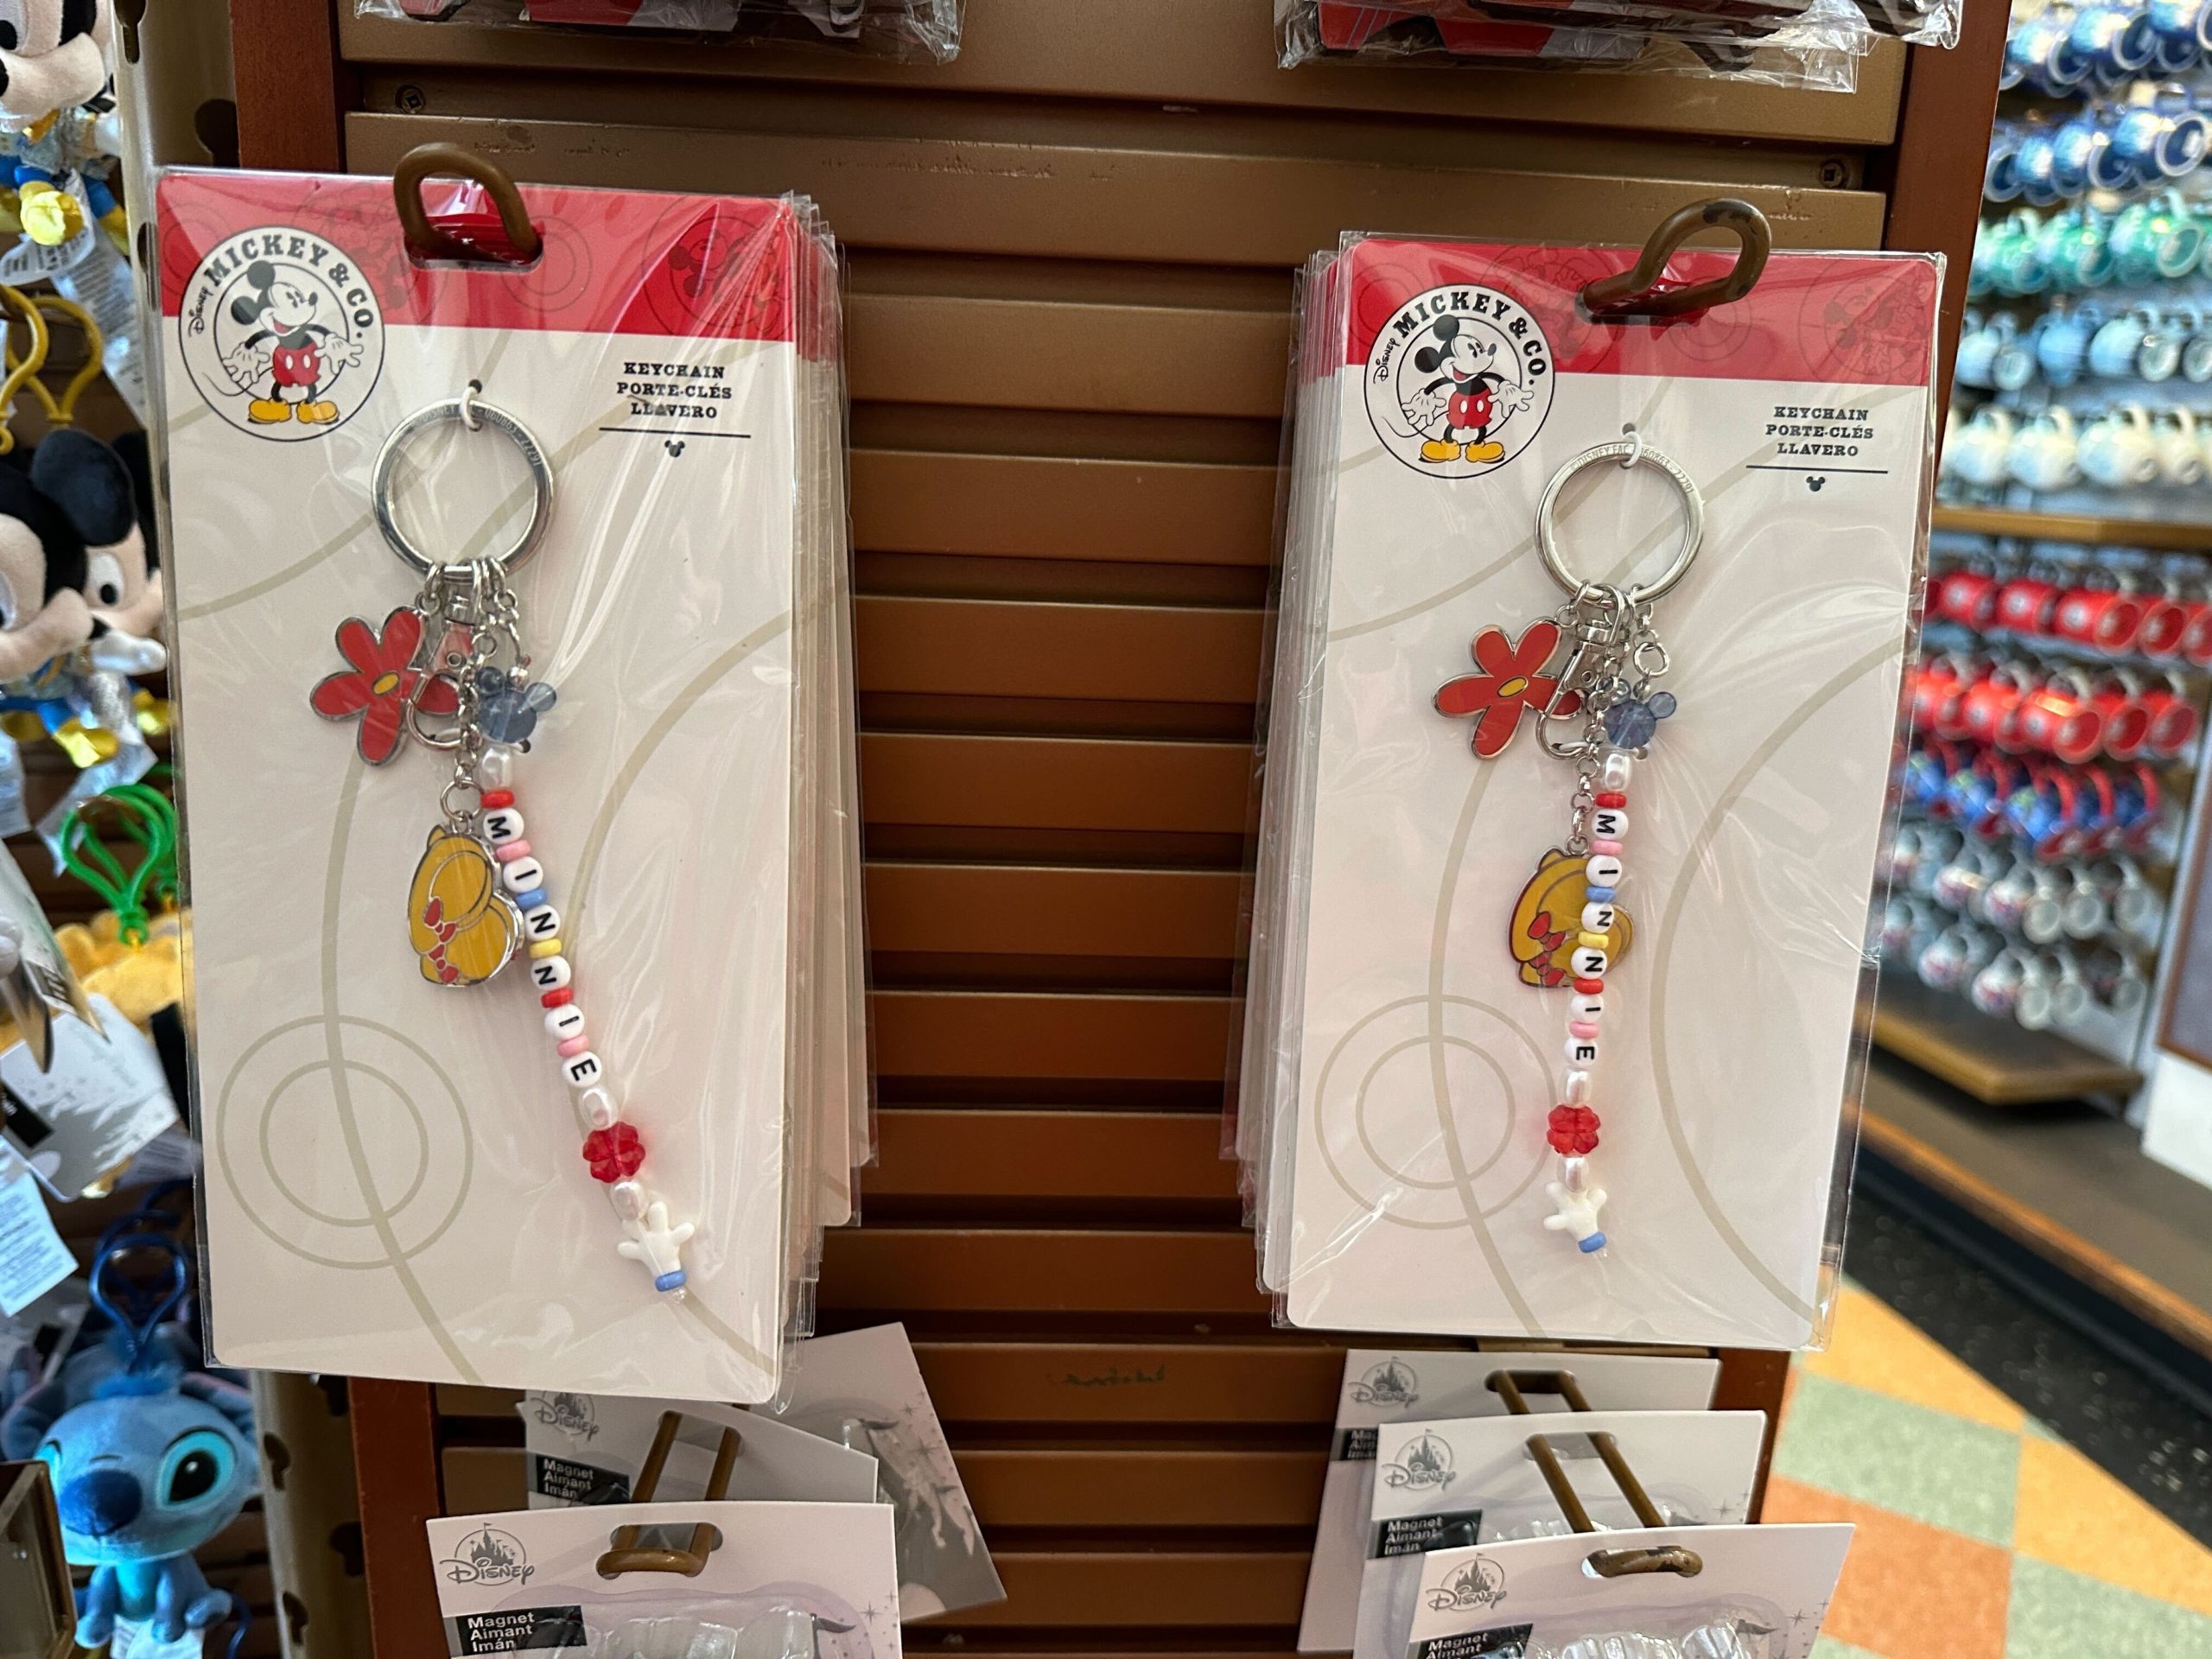 Disney Classic Minnie Mouse Keychain